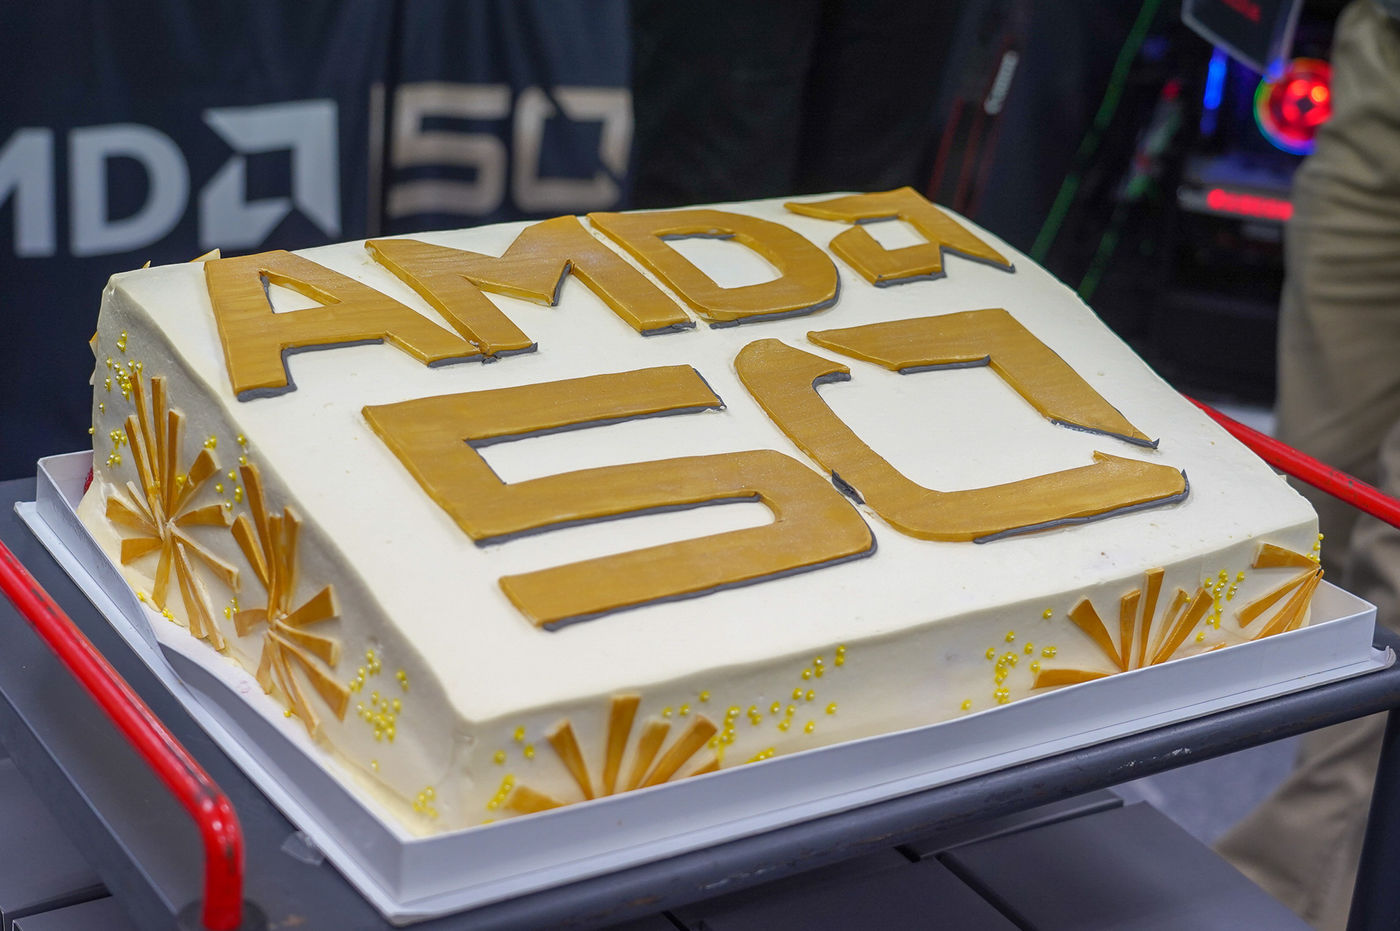 AMD50周年のケーキ、なおケーキはこの後スタッフがおいしく頂いたそうだ